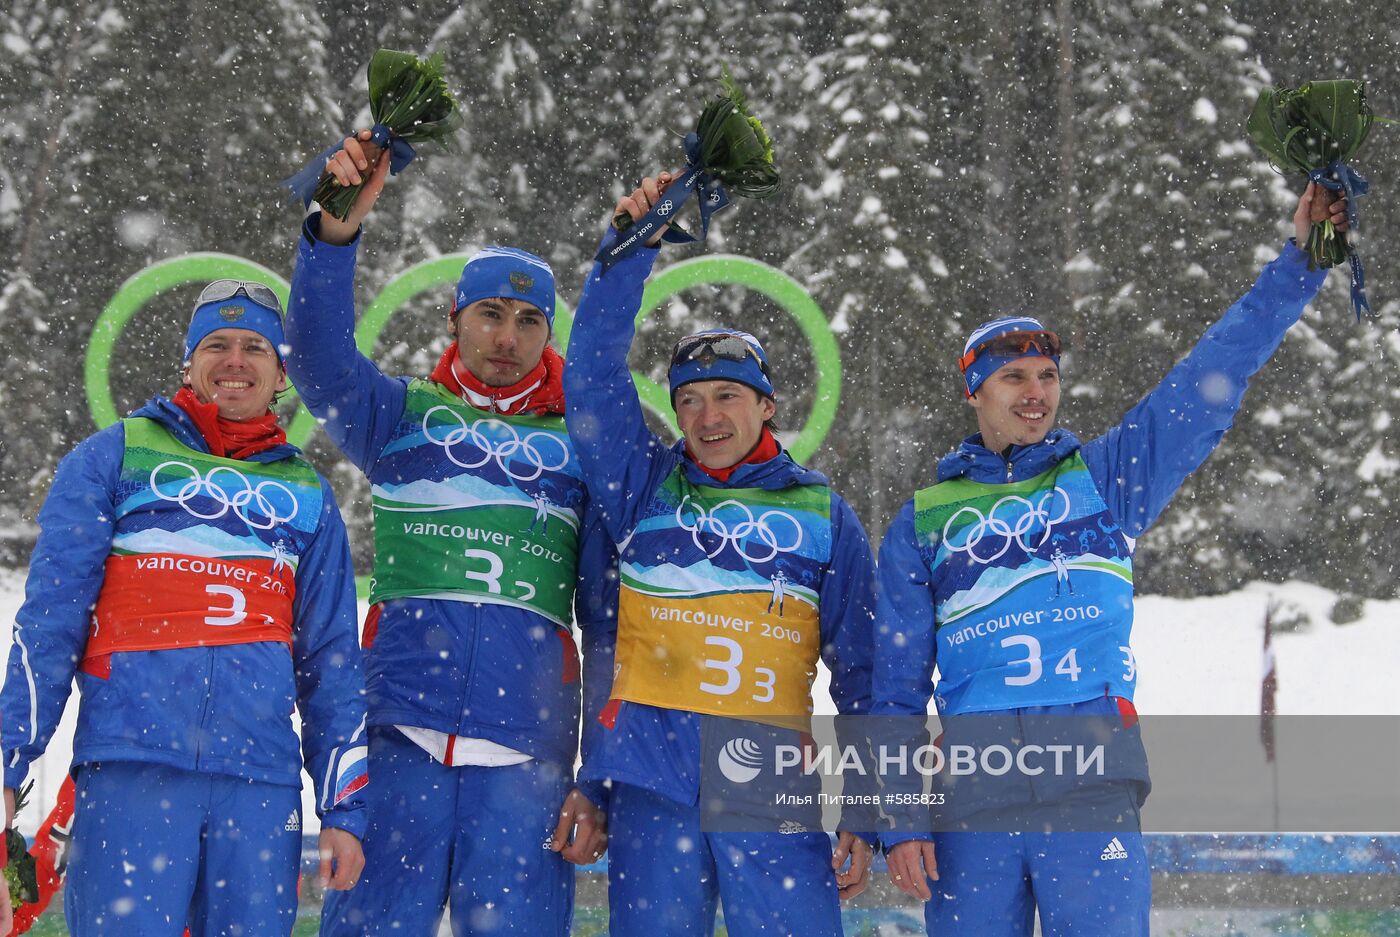 Российские биатлонисты - бронзовые призеры в эстафете 4х7,5 км